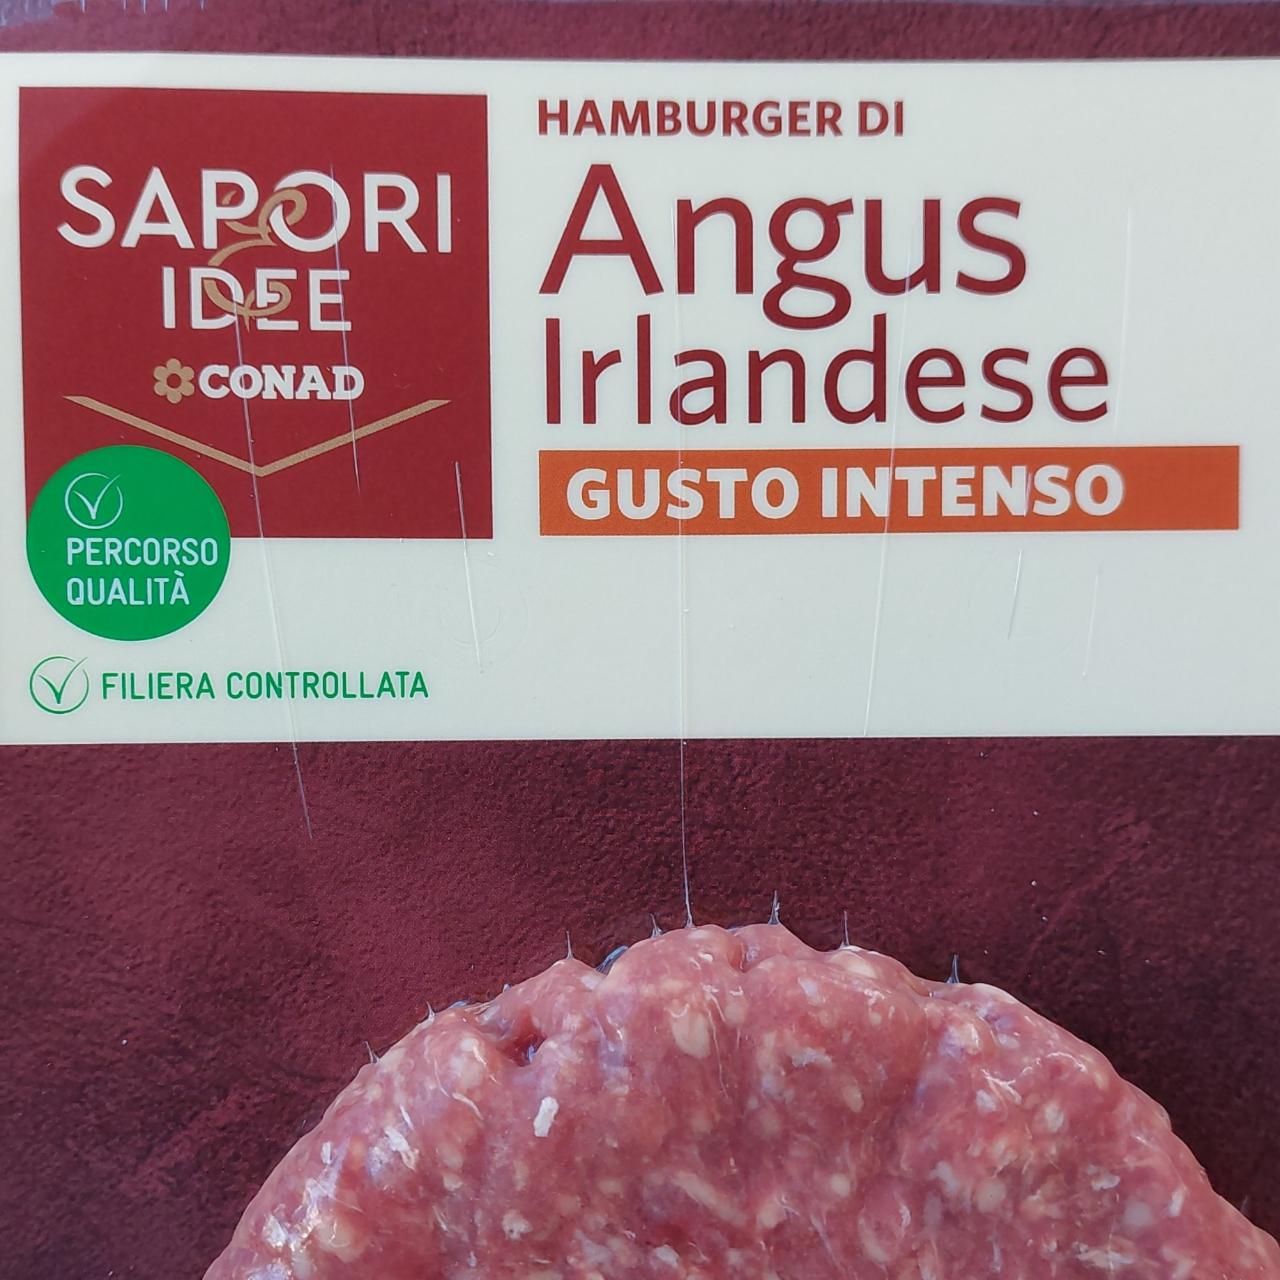 Fotografie - hamburger angus irlandese sapori idee Conad